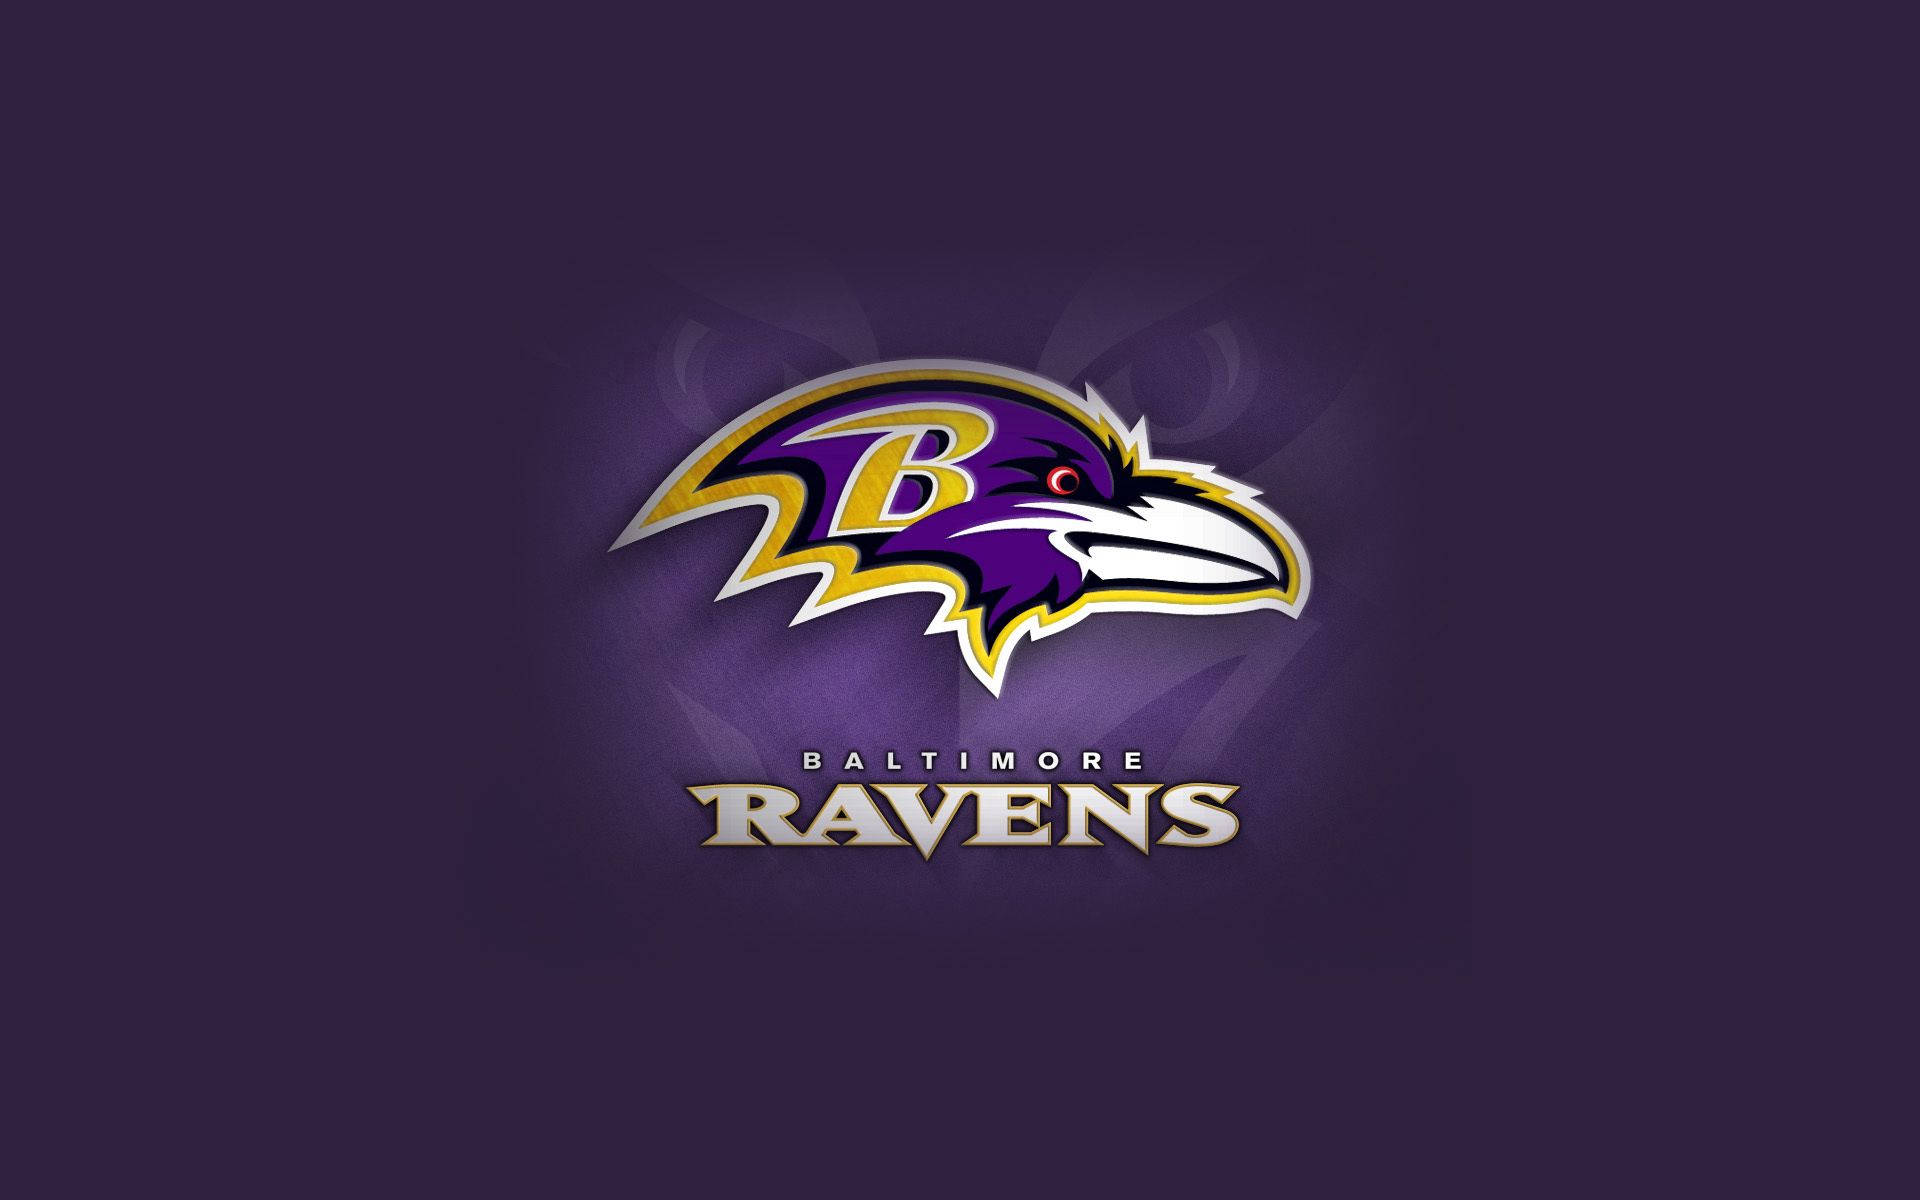 Top 999+ Baltimore Ravens Wallpaper Full HD, 4K✅Free to Use